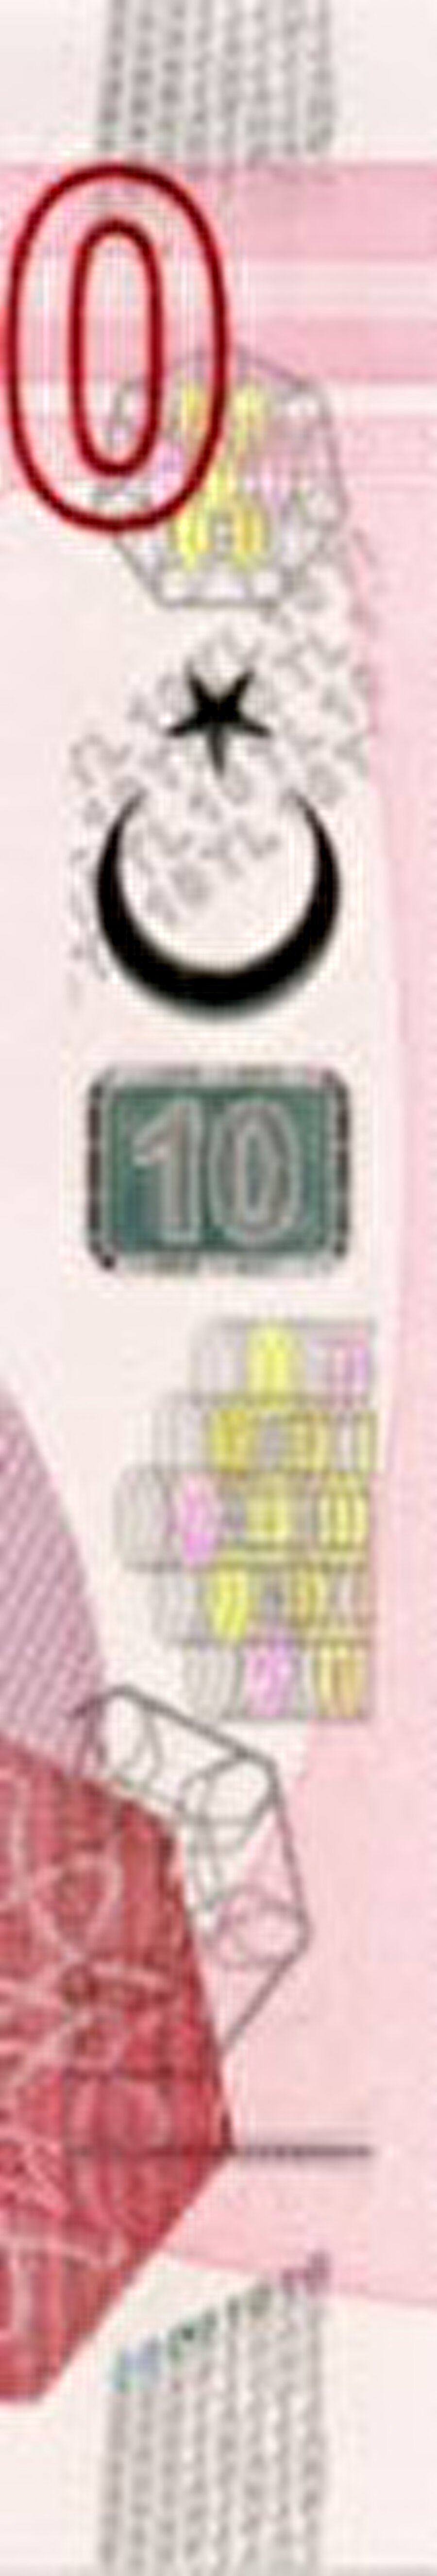 Holografik Şerit Folyo
Banknot tasarımıyla uyumlu çeşitli motiflerden oluşur. Banknota farklı açılardan bakıldığında bu motifler renkli ve parlak yansımalar verir. Dikdörtgen şekil içindeki "TL" harfleri kupür değerine dönüşür.